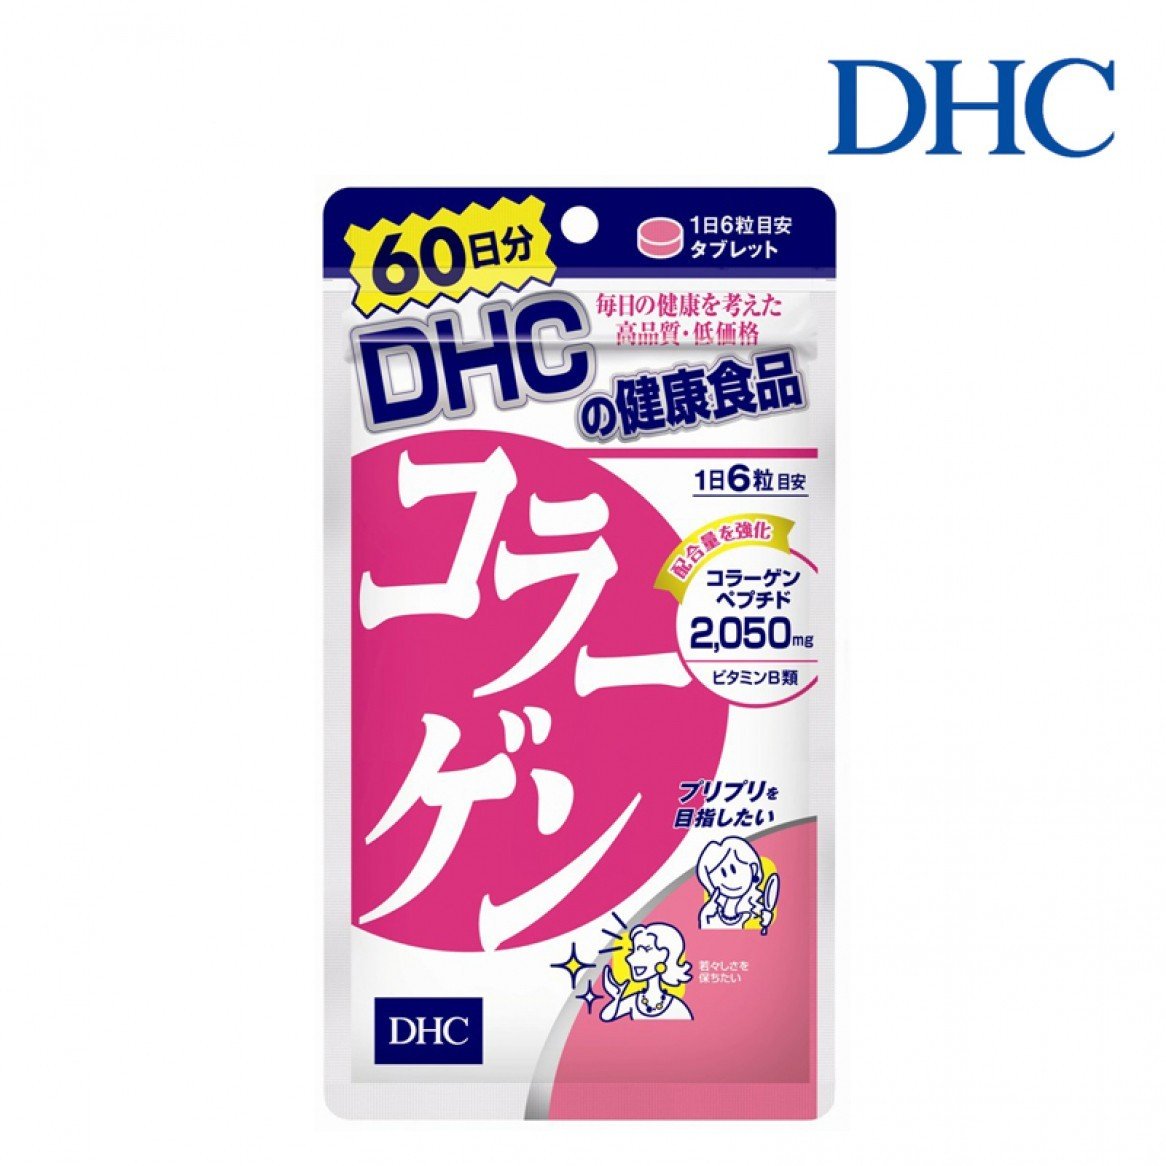 คอลลาเจนบำรุงผิว DHC Collagen